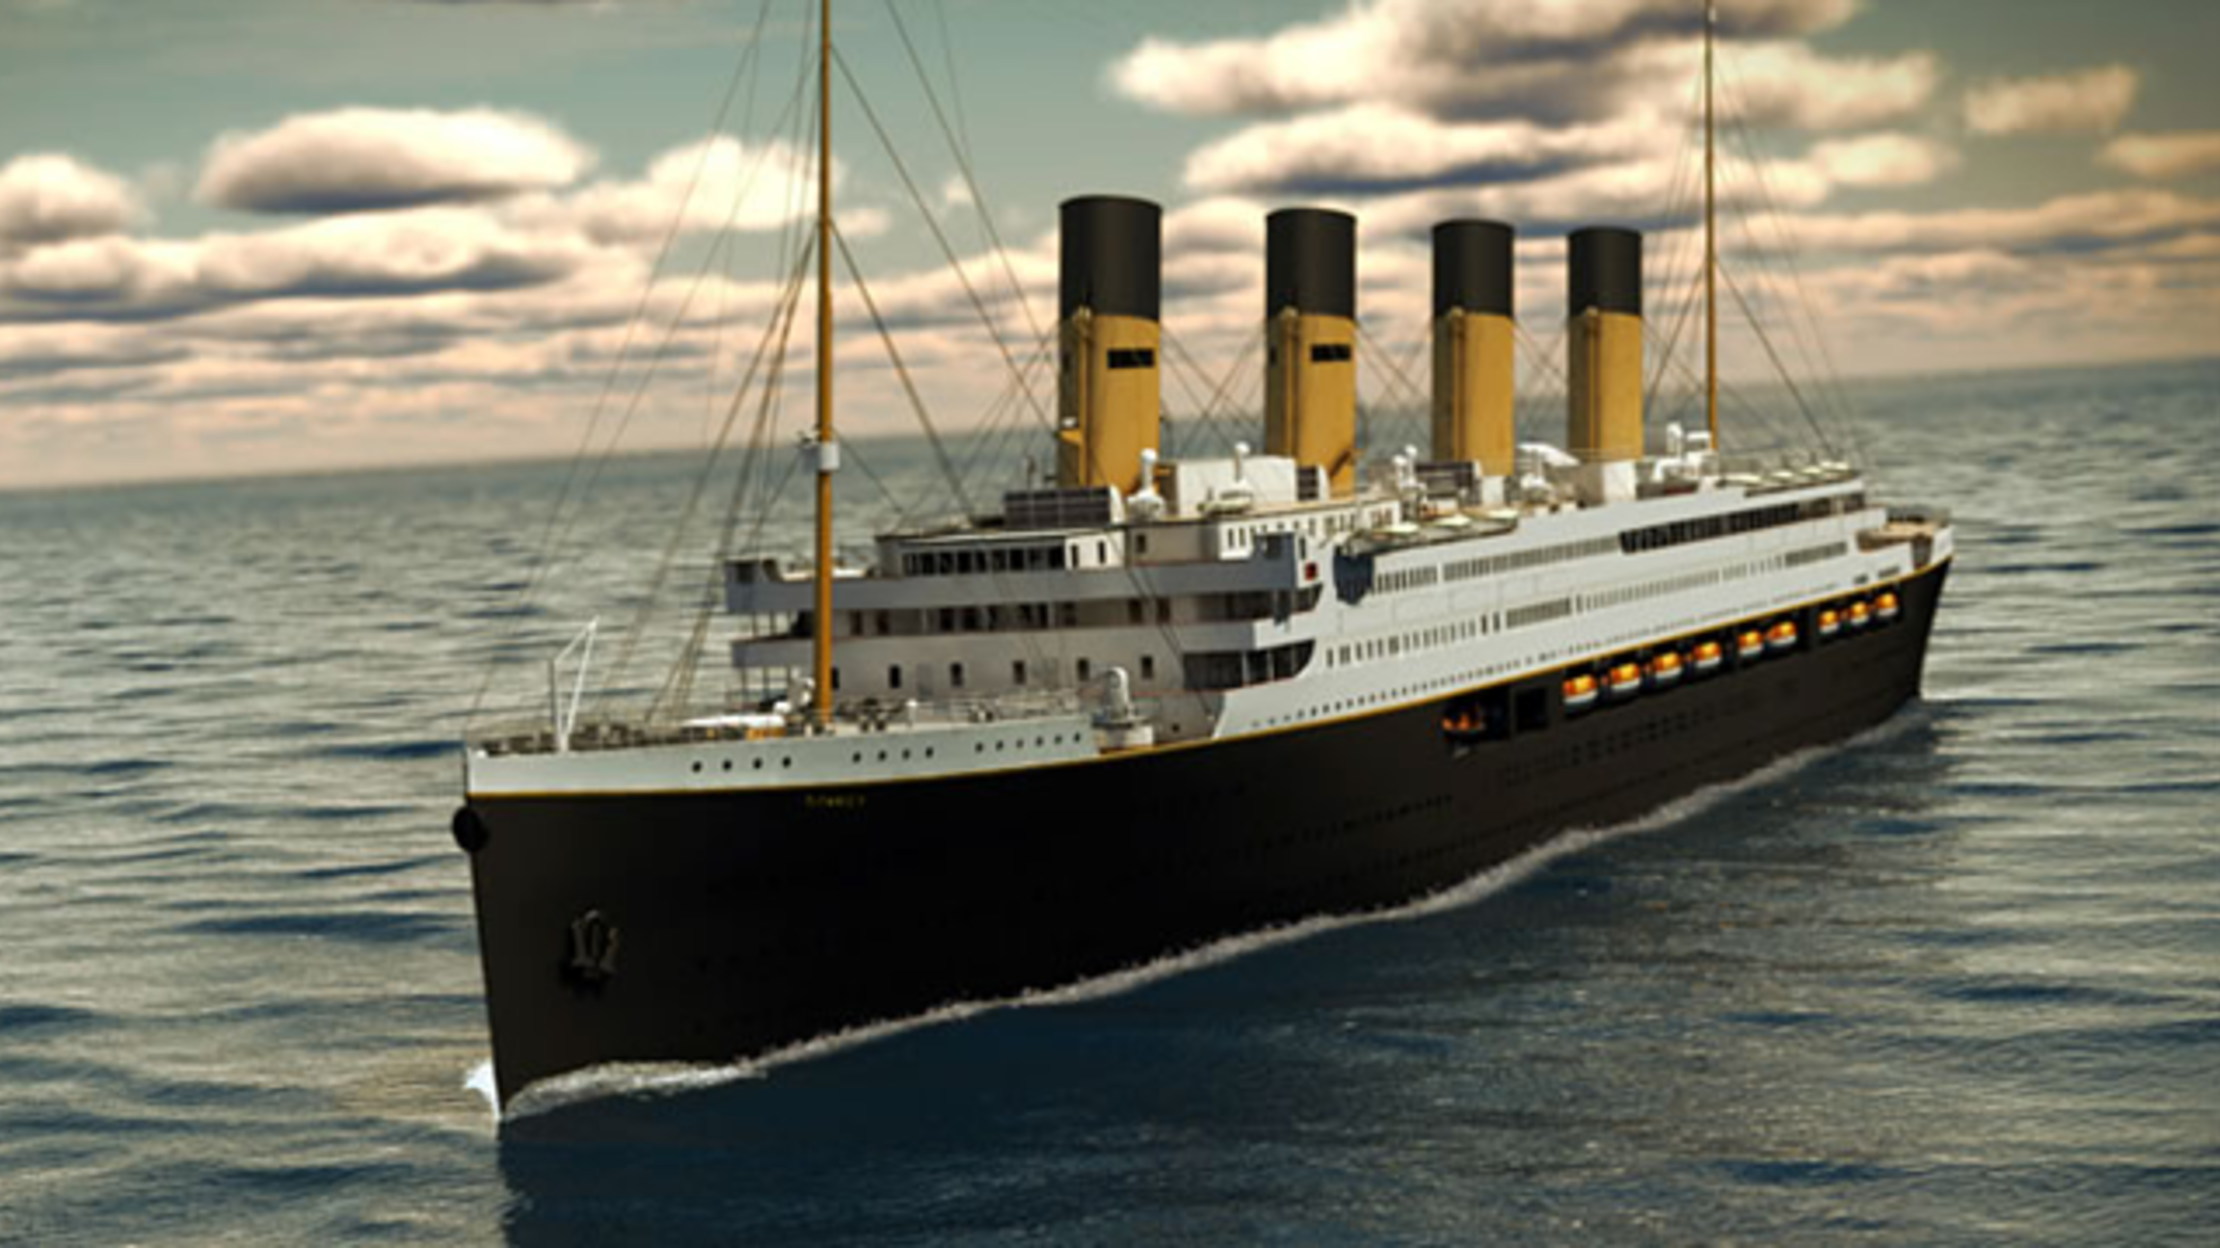 replica of the titanic cruise ship